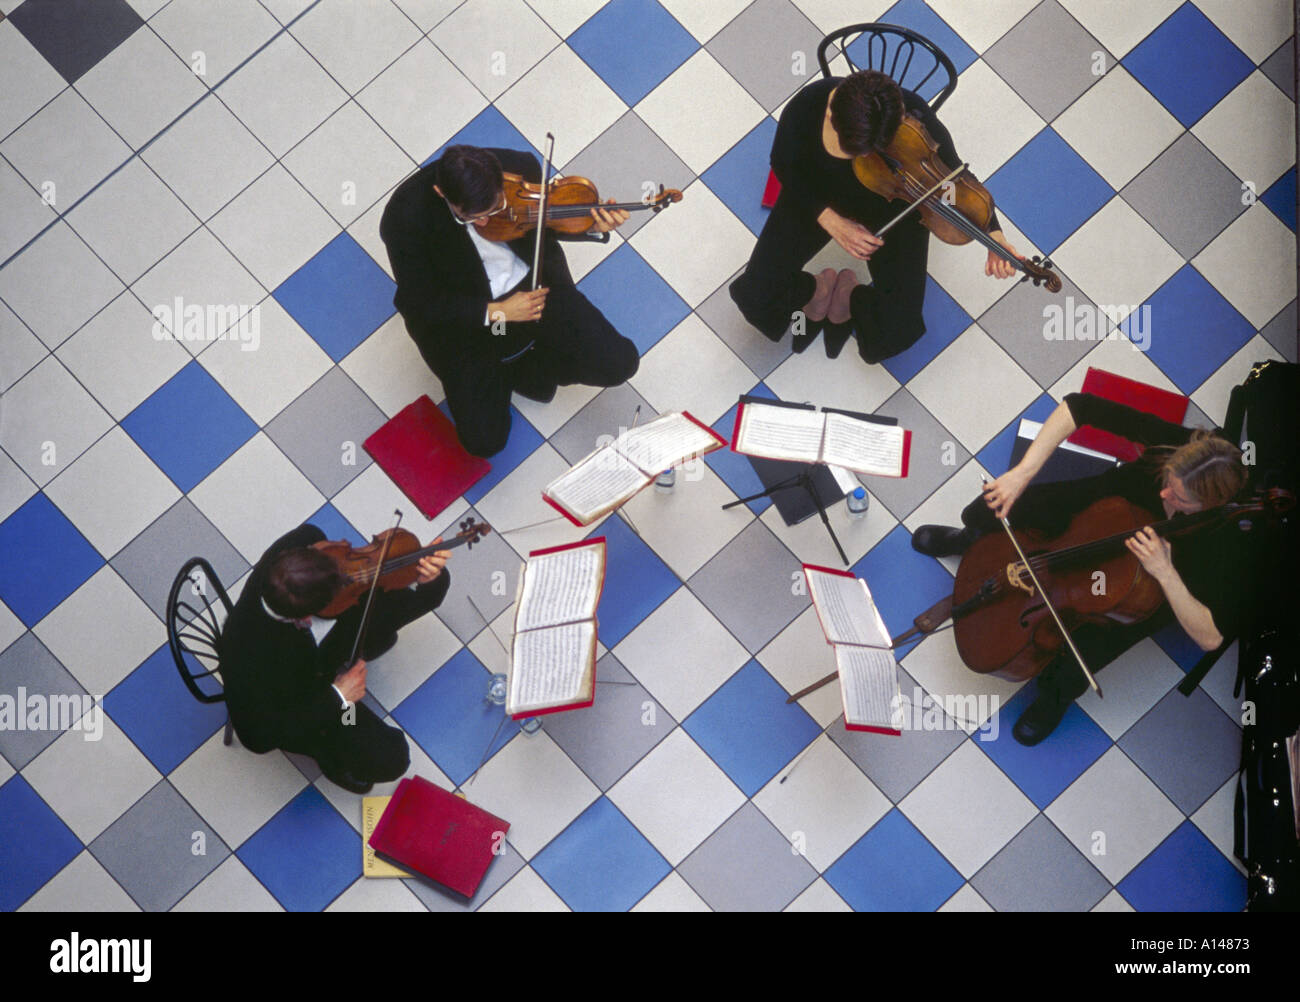 Quartetto d'archi che suona musica classica nel centro commerciale di San Nicola, circa 2001 - vista dall'alto. Sutton, Lonfon, Regno Unito Foto Stock